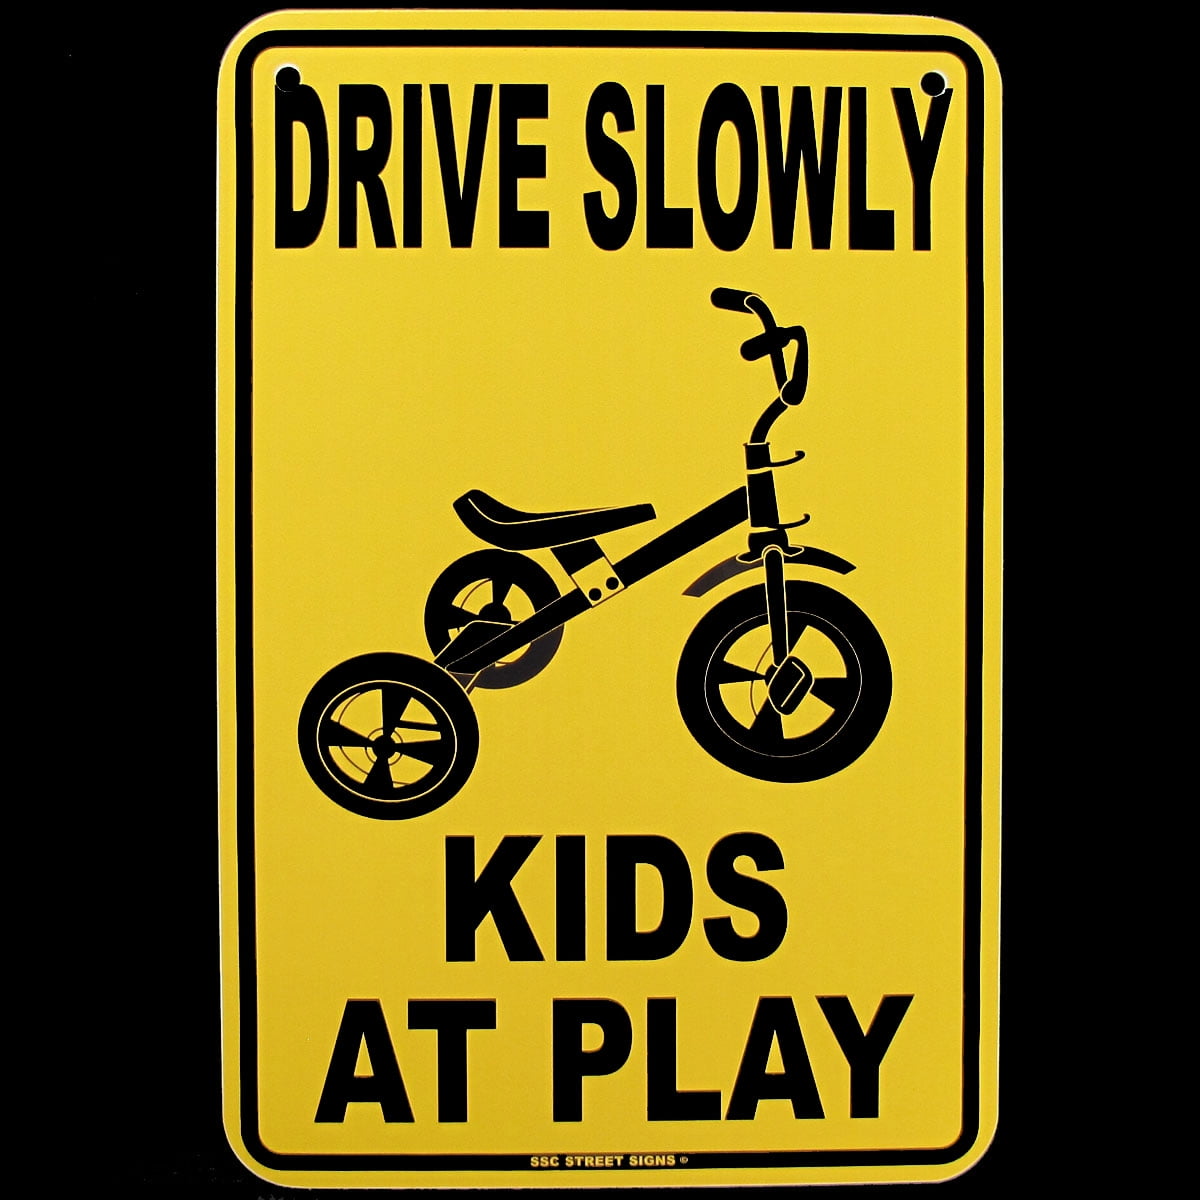 Kids at Play Street Sign 3x18 Metal Plaque SA-1233 